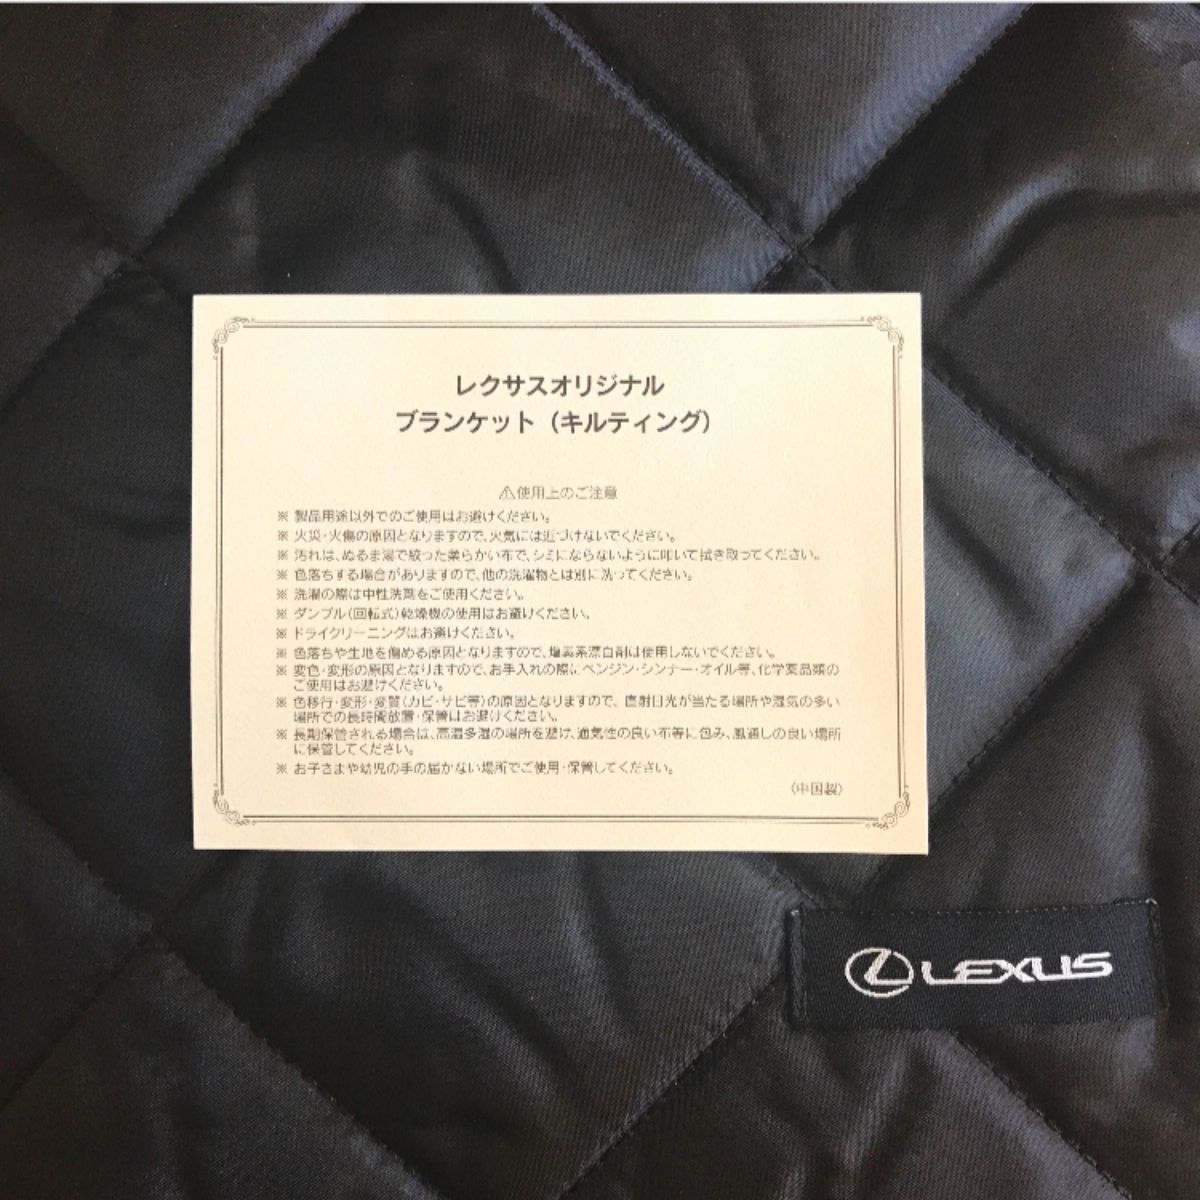 ■新品未使用■レクサス LEXUS オリジナル『ブランケット』非売品 キルティング ブラック×ホワイト ボア 膝掛け  送料無料！